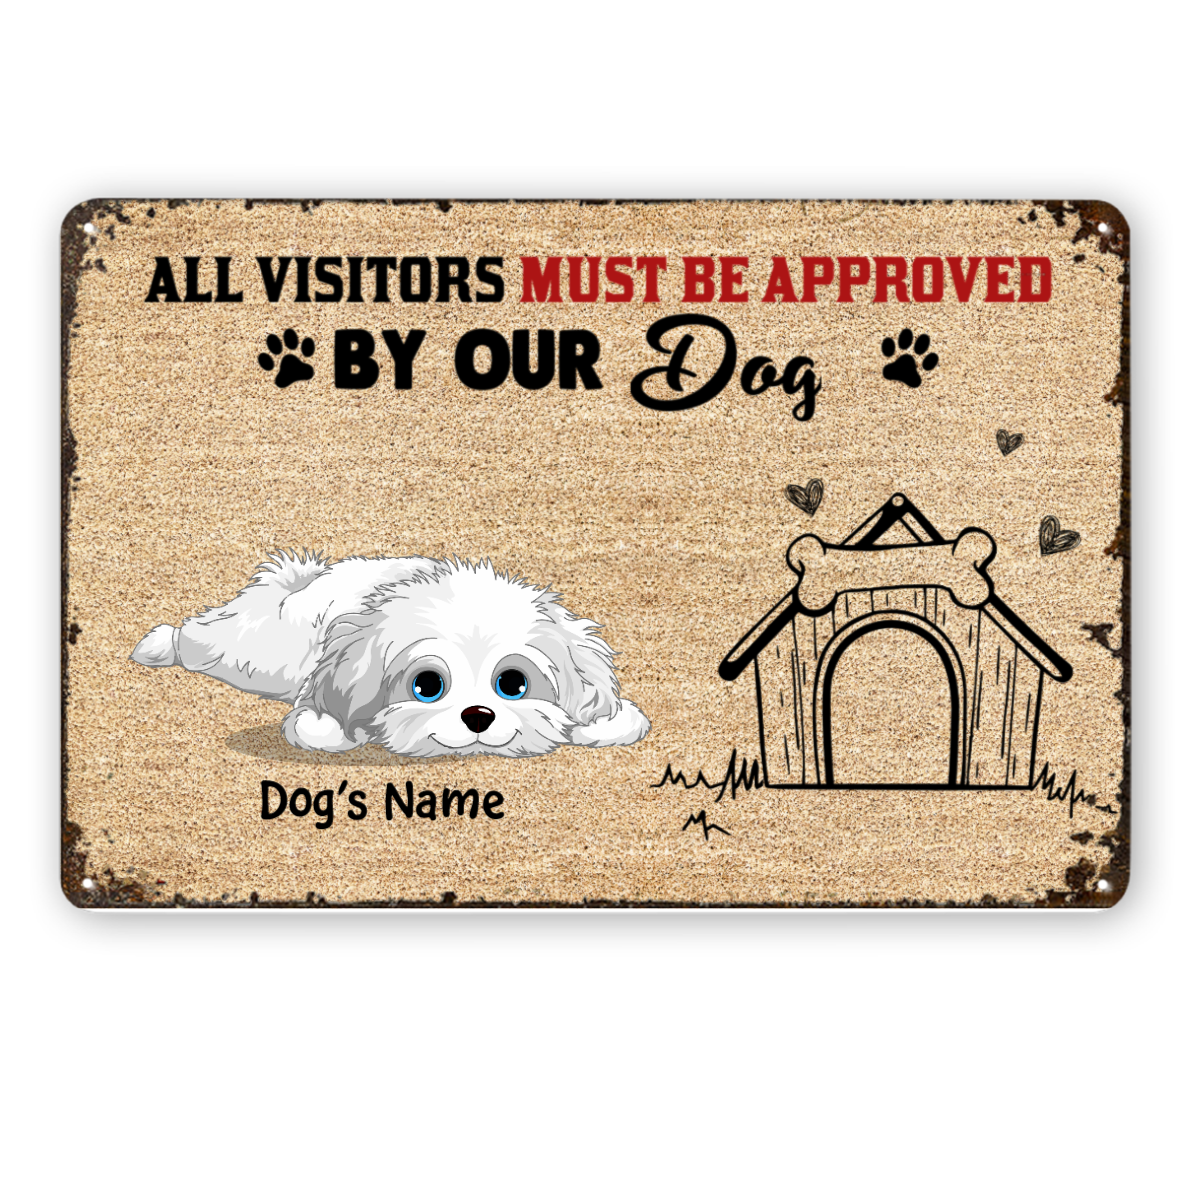 訪問者は私たちの犬によって承認されなければなりません パーソナライズされたメタルサイン